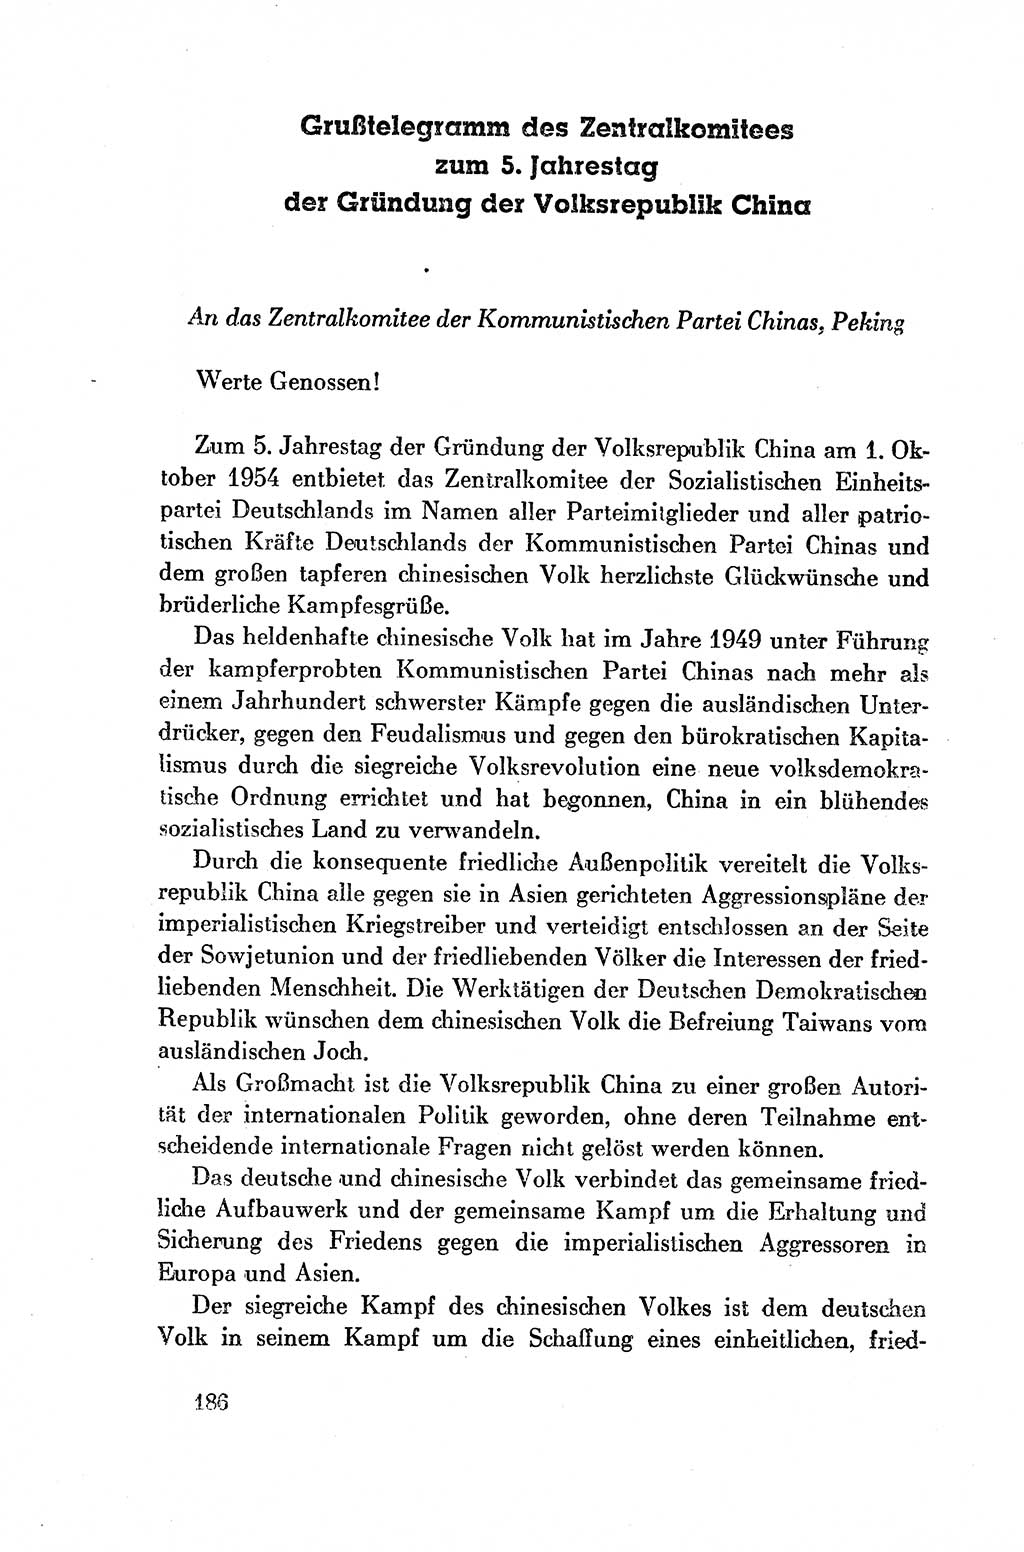 Dokumente der Sozialistischen Einheitspartei Deutschlands (SED) [Deutsche Demokratische Republik (DDR)] 1954-1955, Seite 186 (Dok. SED DDR 1954-1955, S. 186)